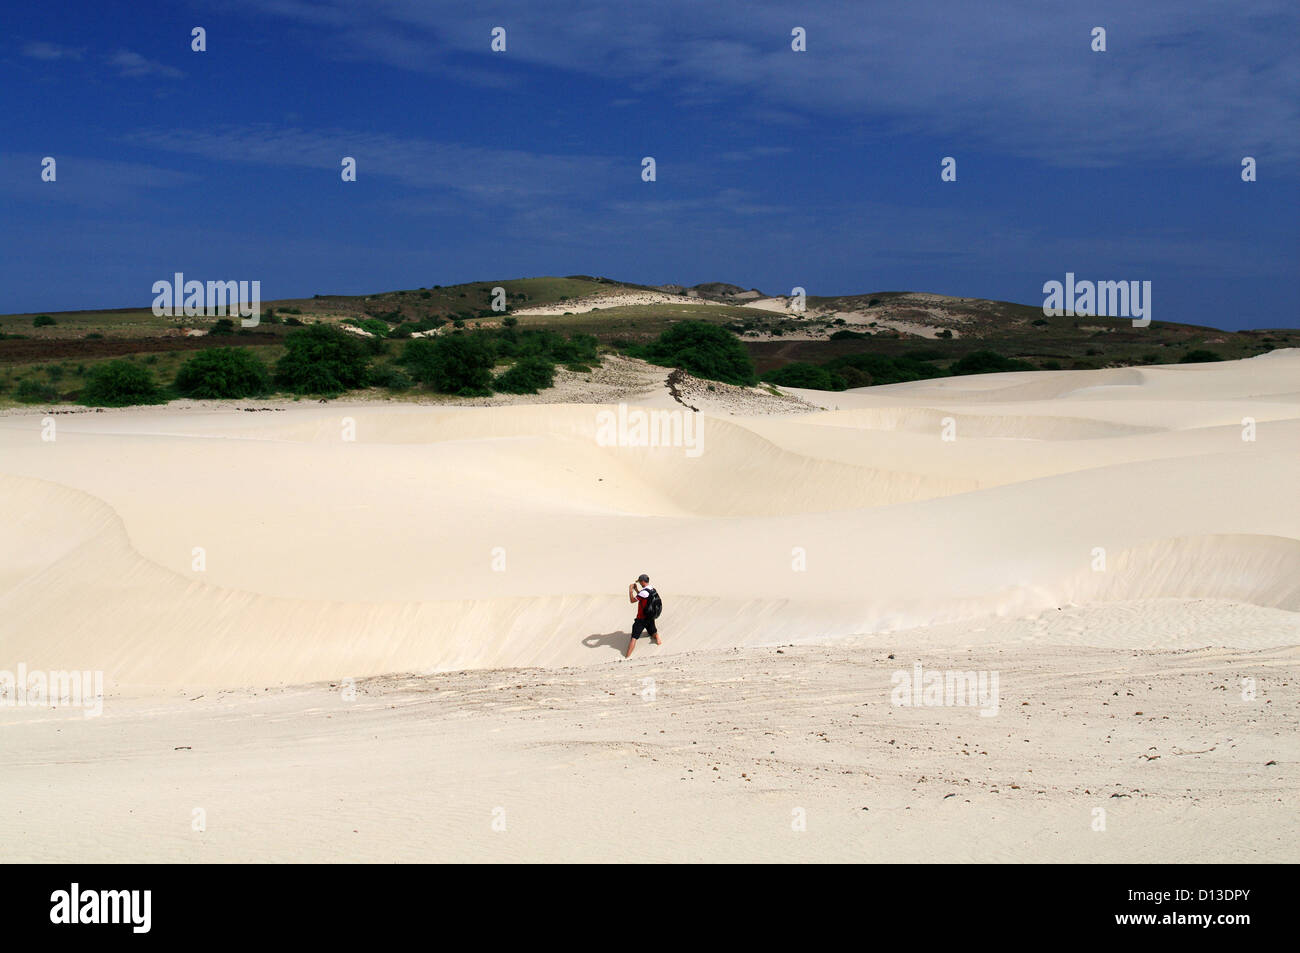 Deserto de Viana - Viana Wüste auf der Insel Boa Vista, Kap Verde Stockfoto